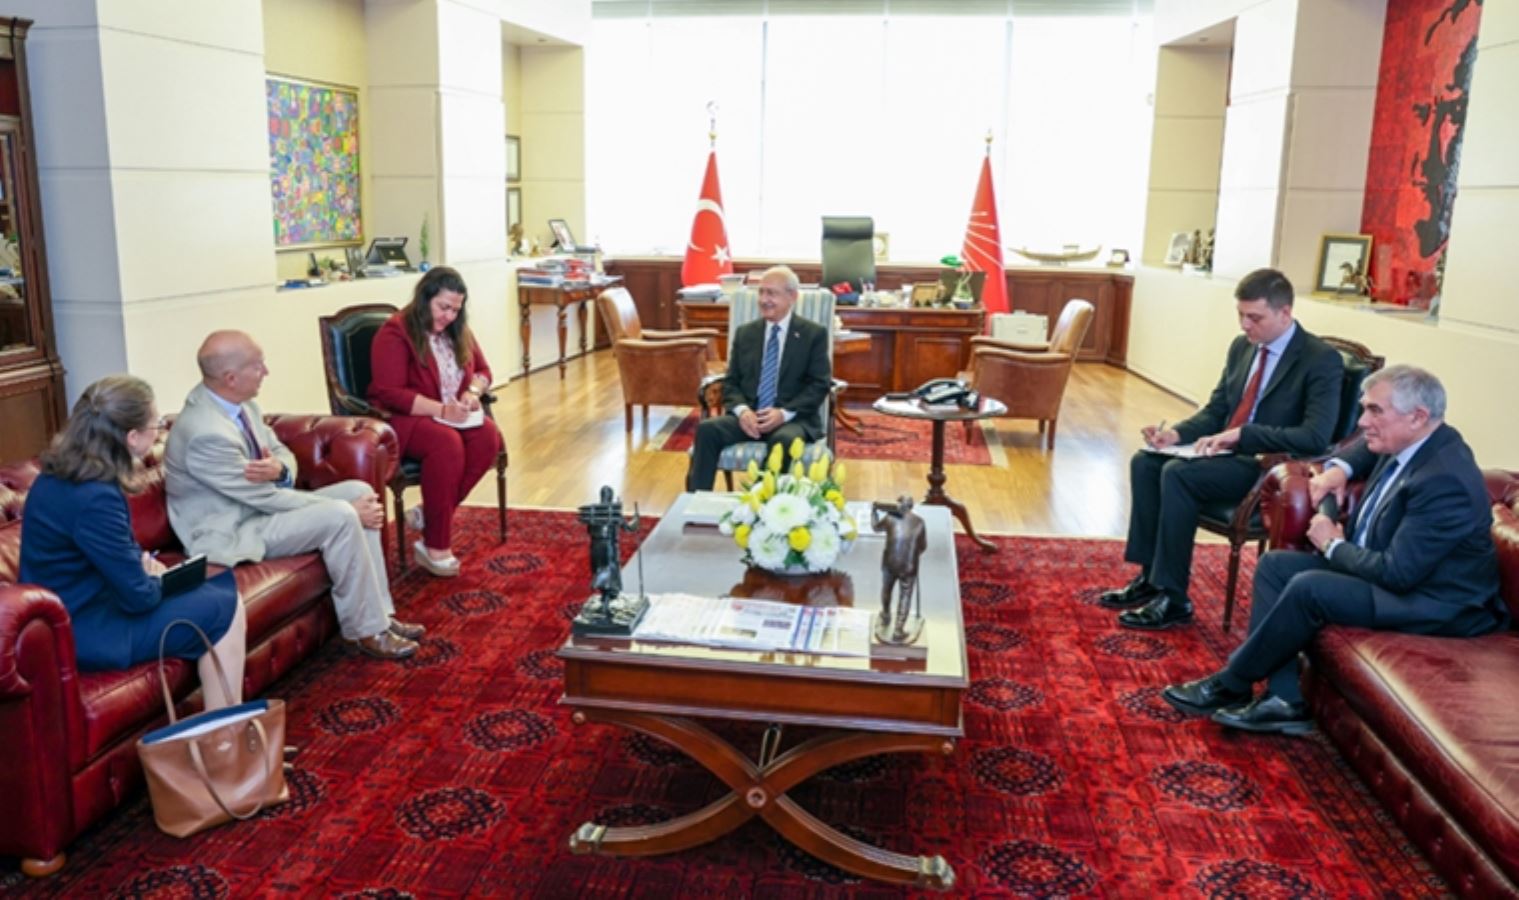 Kılıçdaroğlu, İngiltere'nin Ankara Büyükelçisi Chilcott'u kabul etti